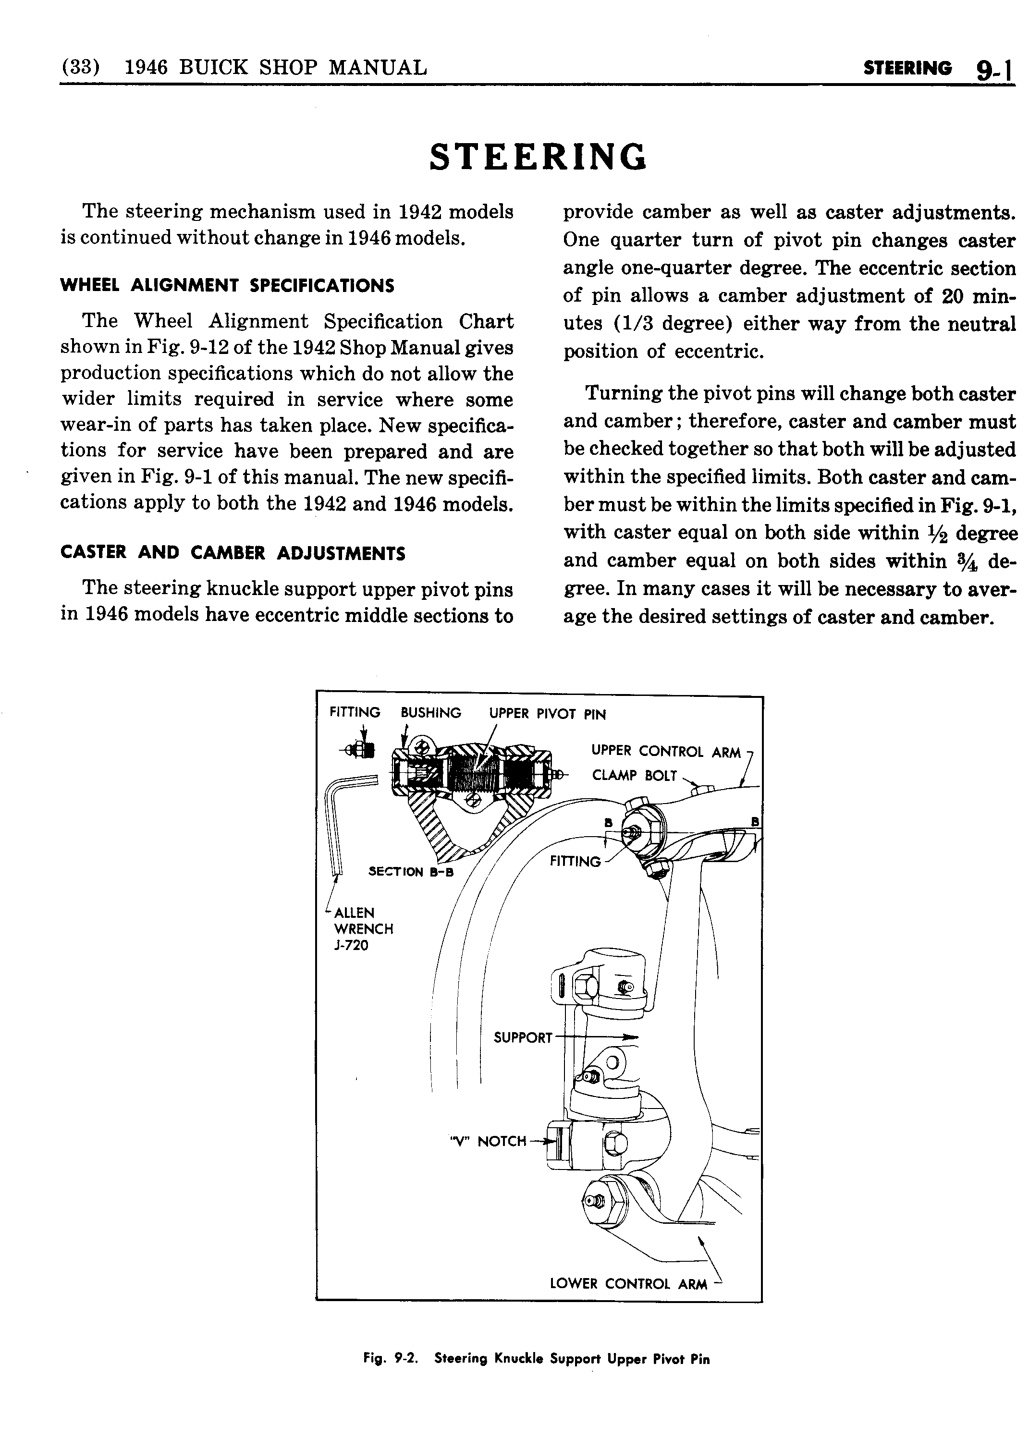 n_09 1946 Buick Shop Manual - Steering-001-001.jpg